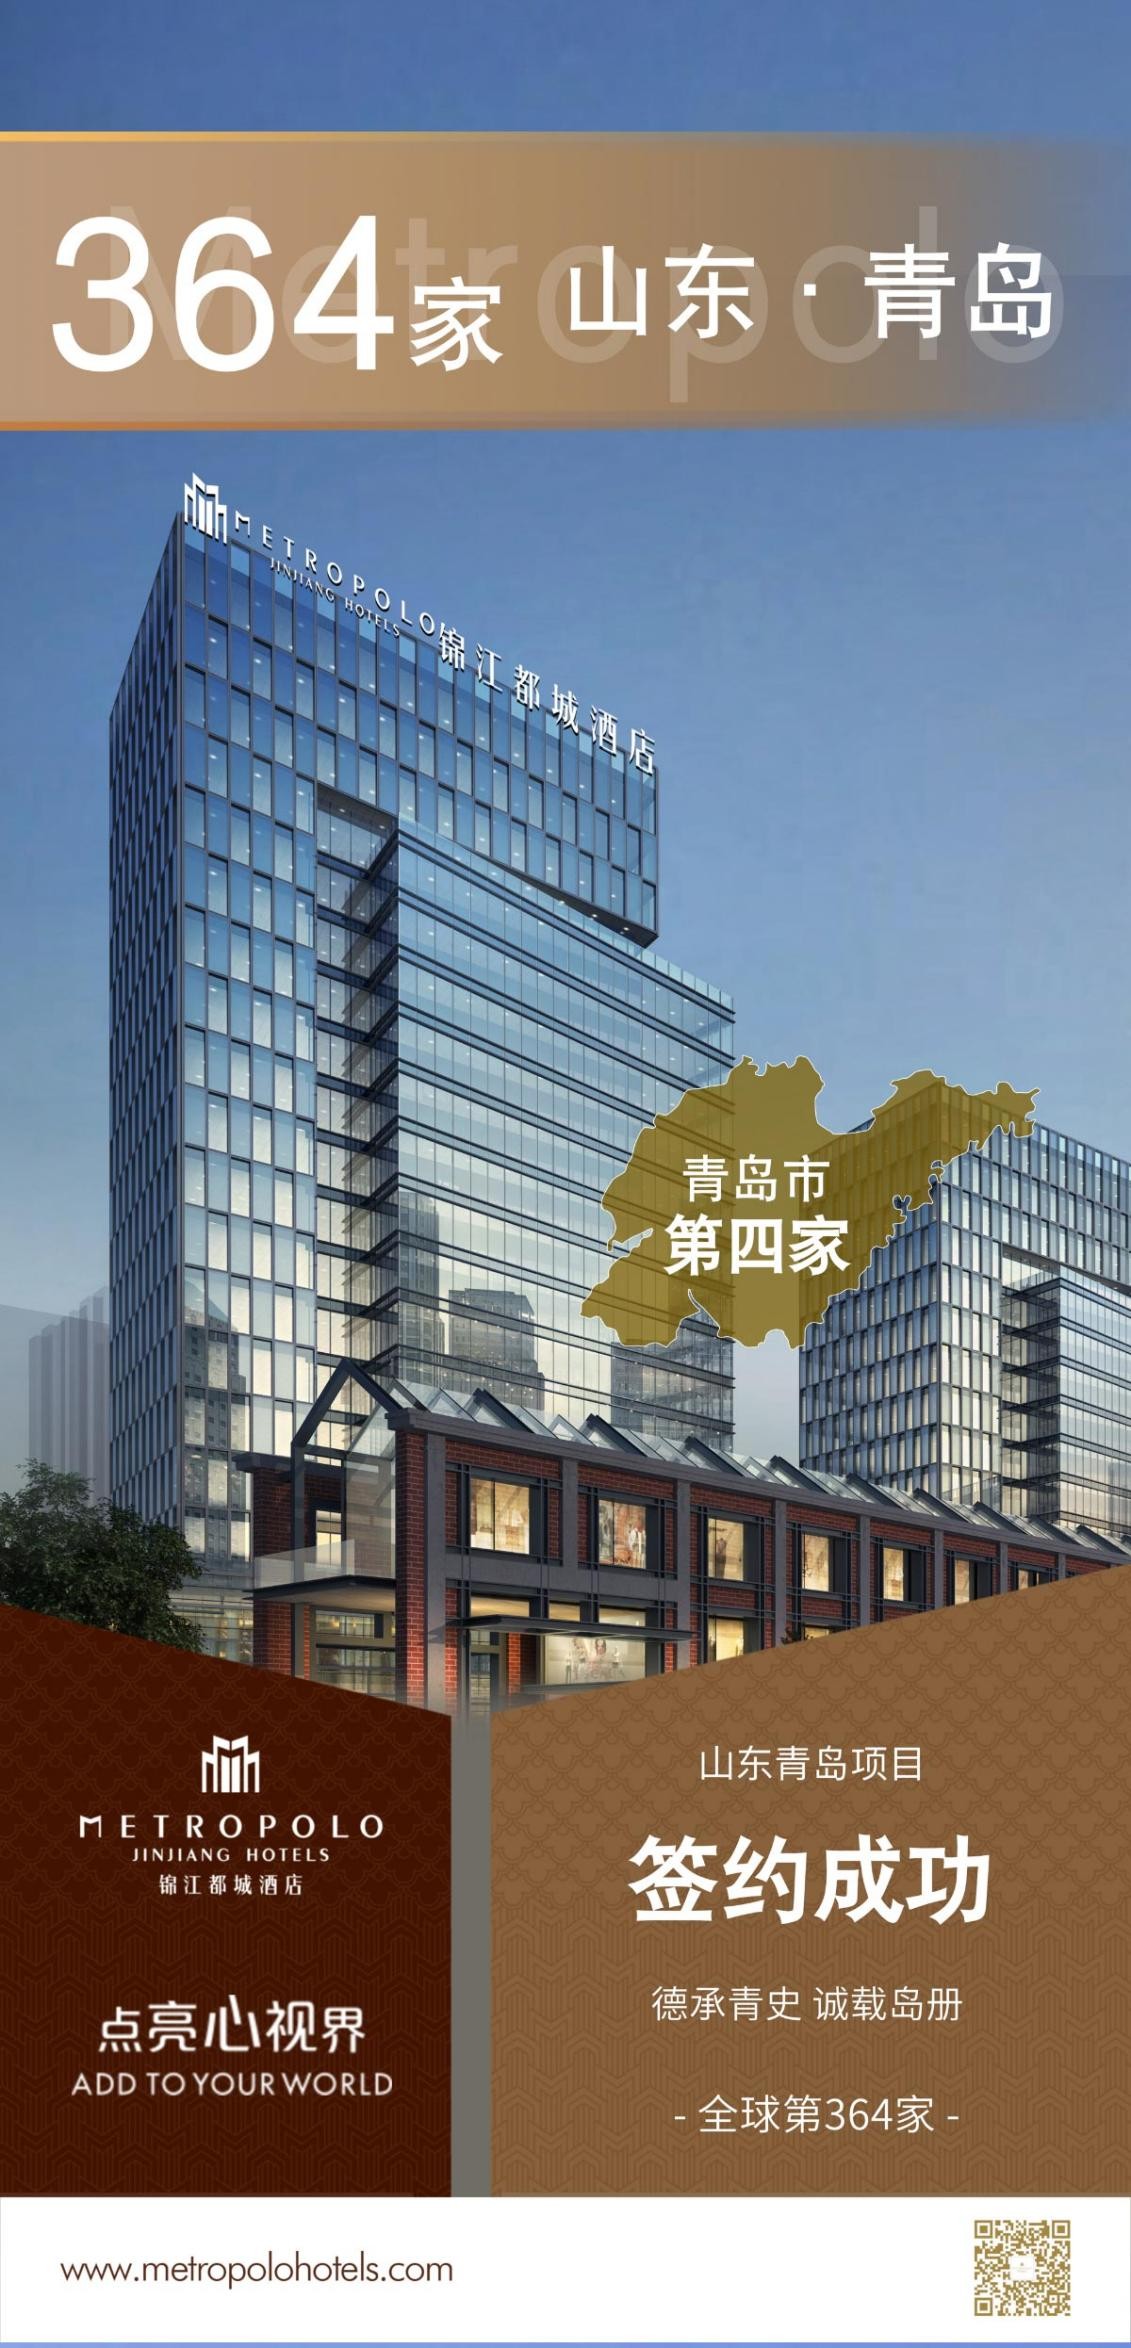 新店签约丨锦江都城酒店全球第364家酒店--山东青岛第四家酒店项目签约成功